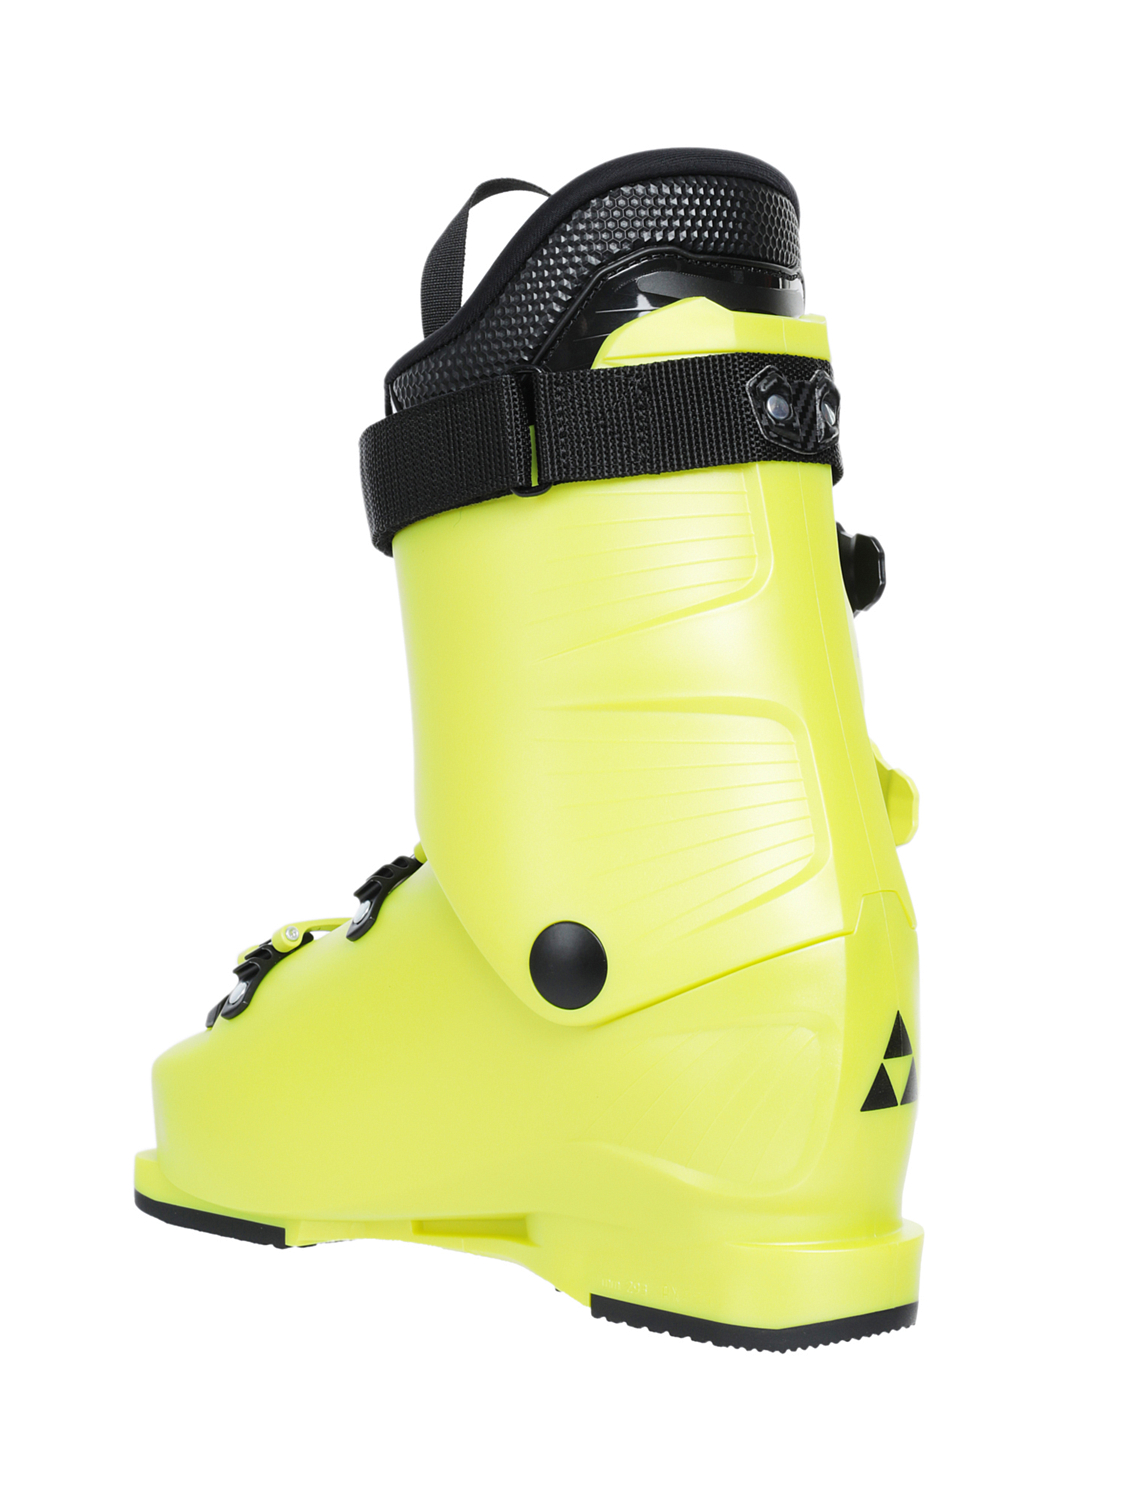 Горнолыжные ботинки детские FISCHER Rc4 70 Jr Yellow — купить недорого,цены в магазине КАНТ